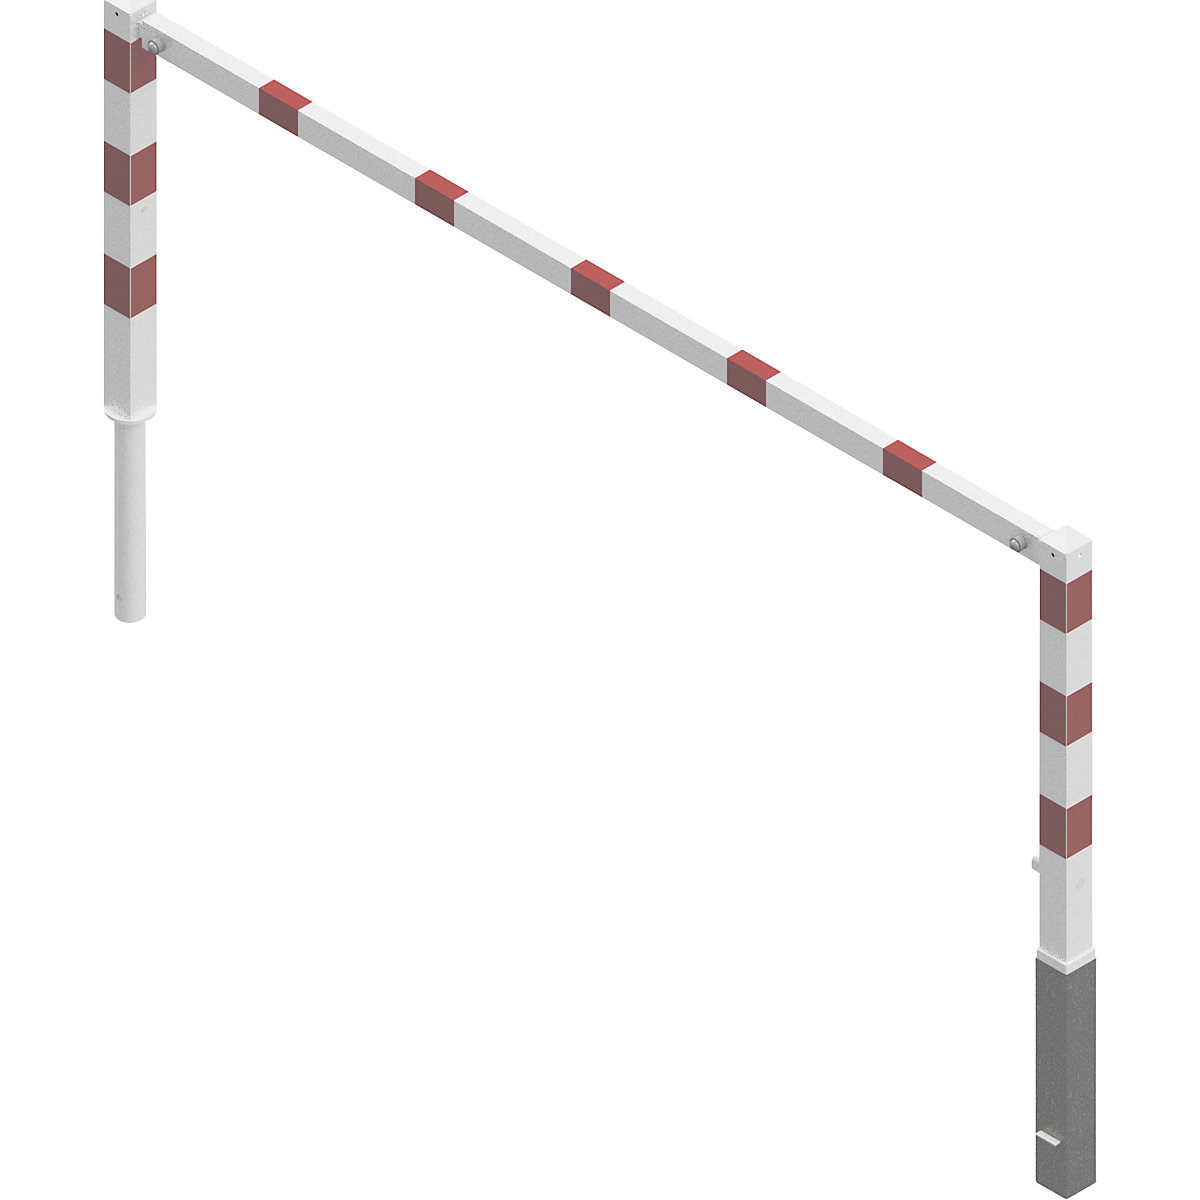 Barrière pivotante, avec barre supérieure, blanc avec bandes réfléchissantes rouges, largeur 2500 mm-4